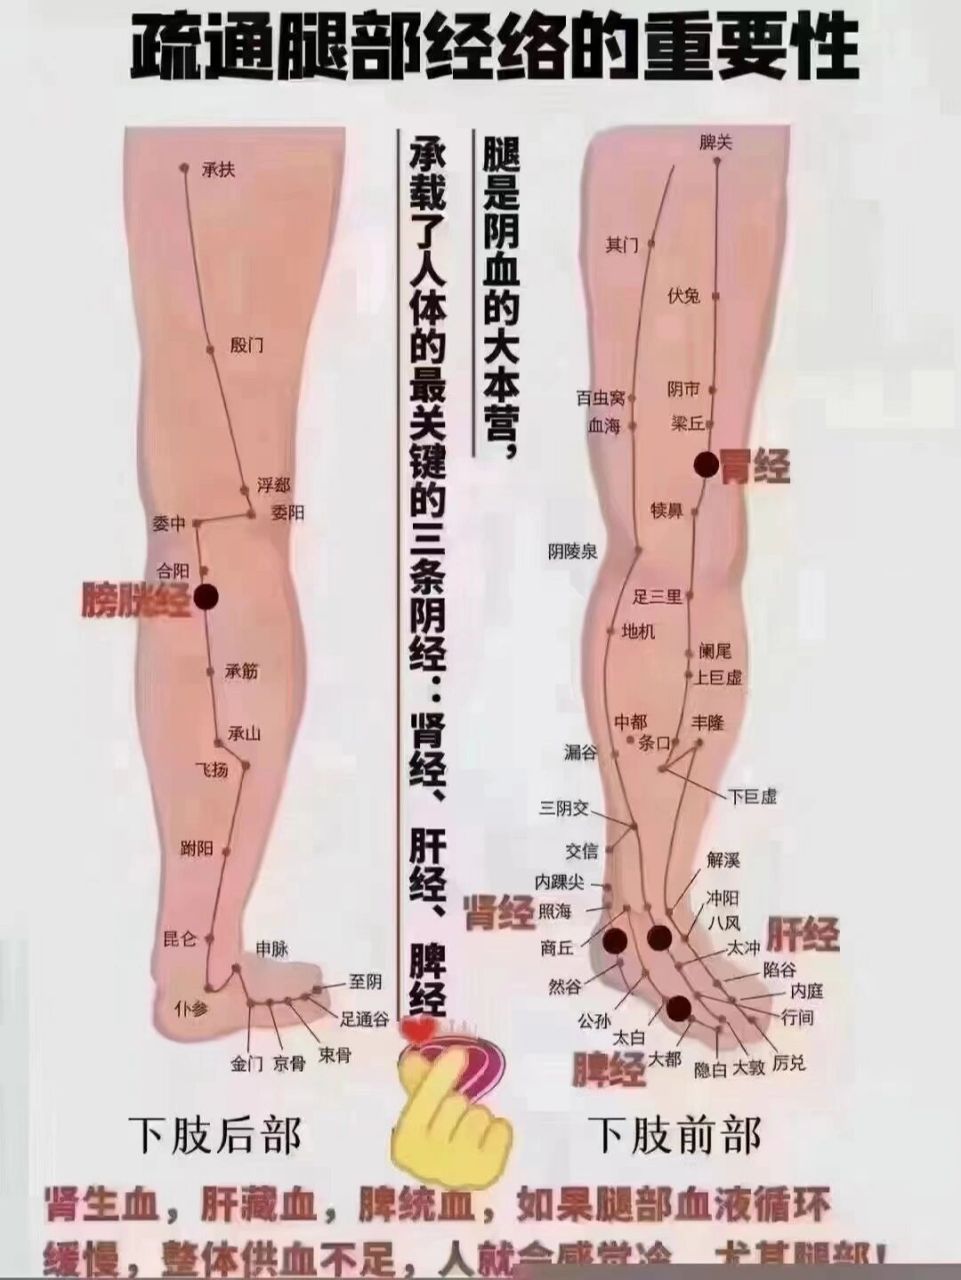 腿部的血位置示意图图片